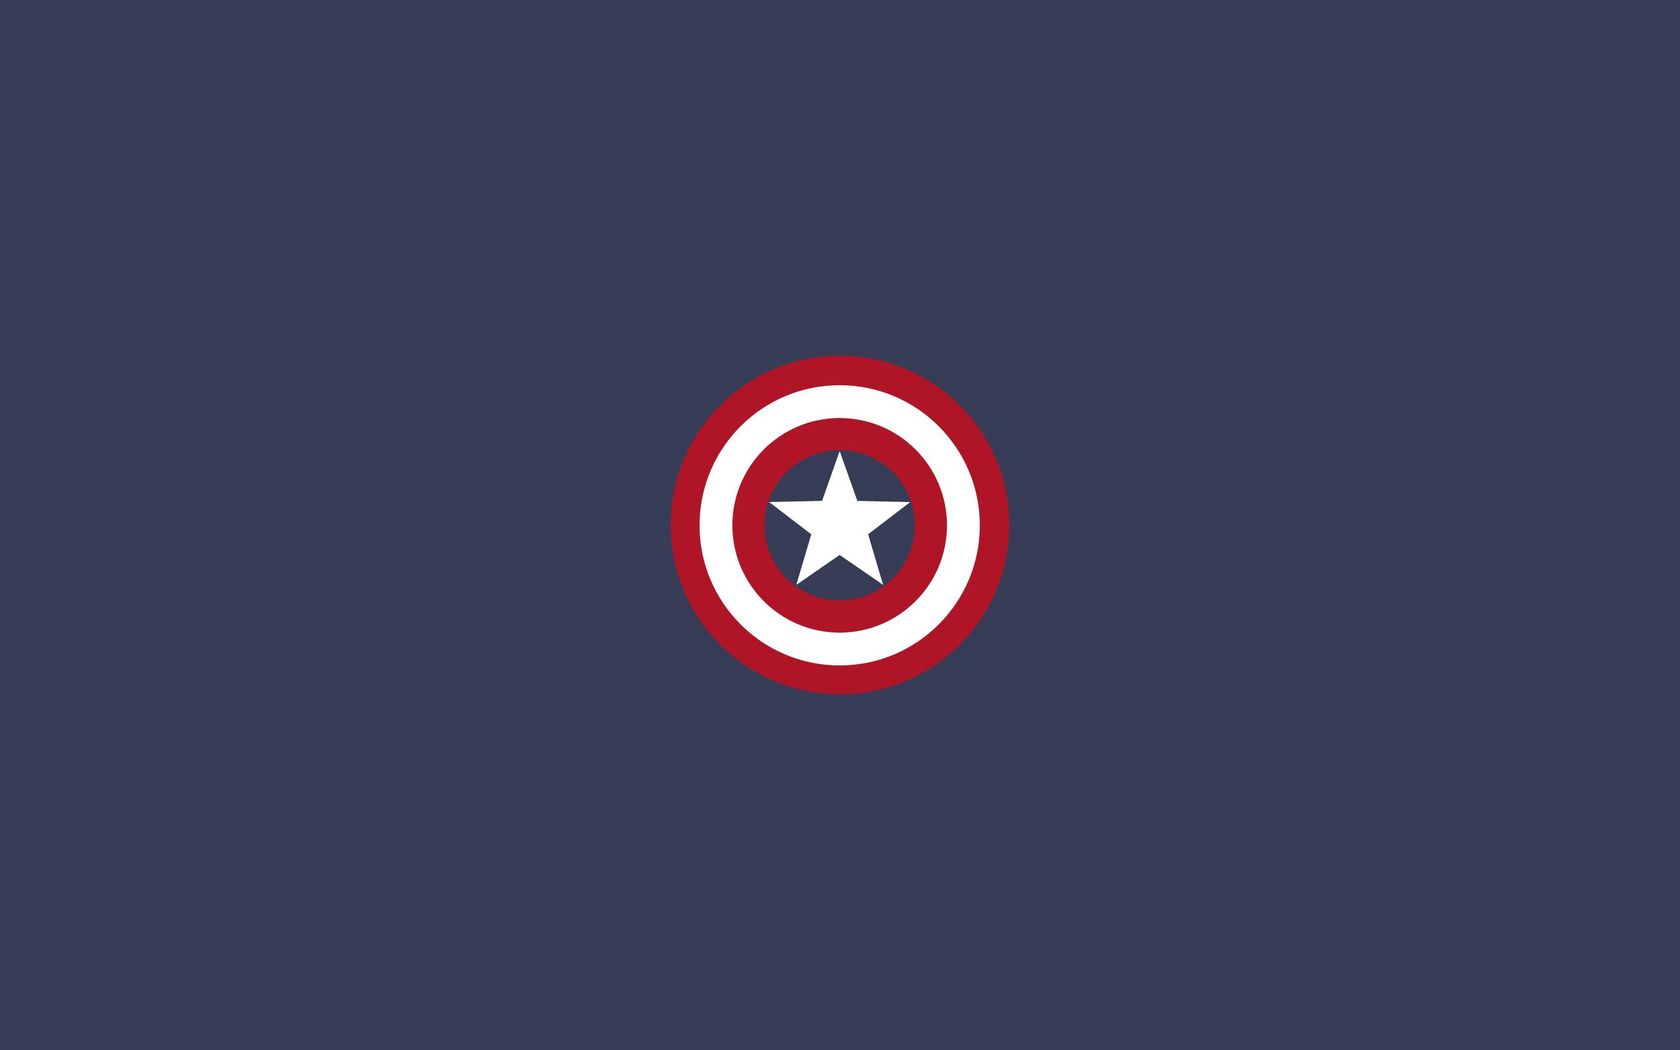 Captain America shield wallpaper 19334